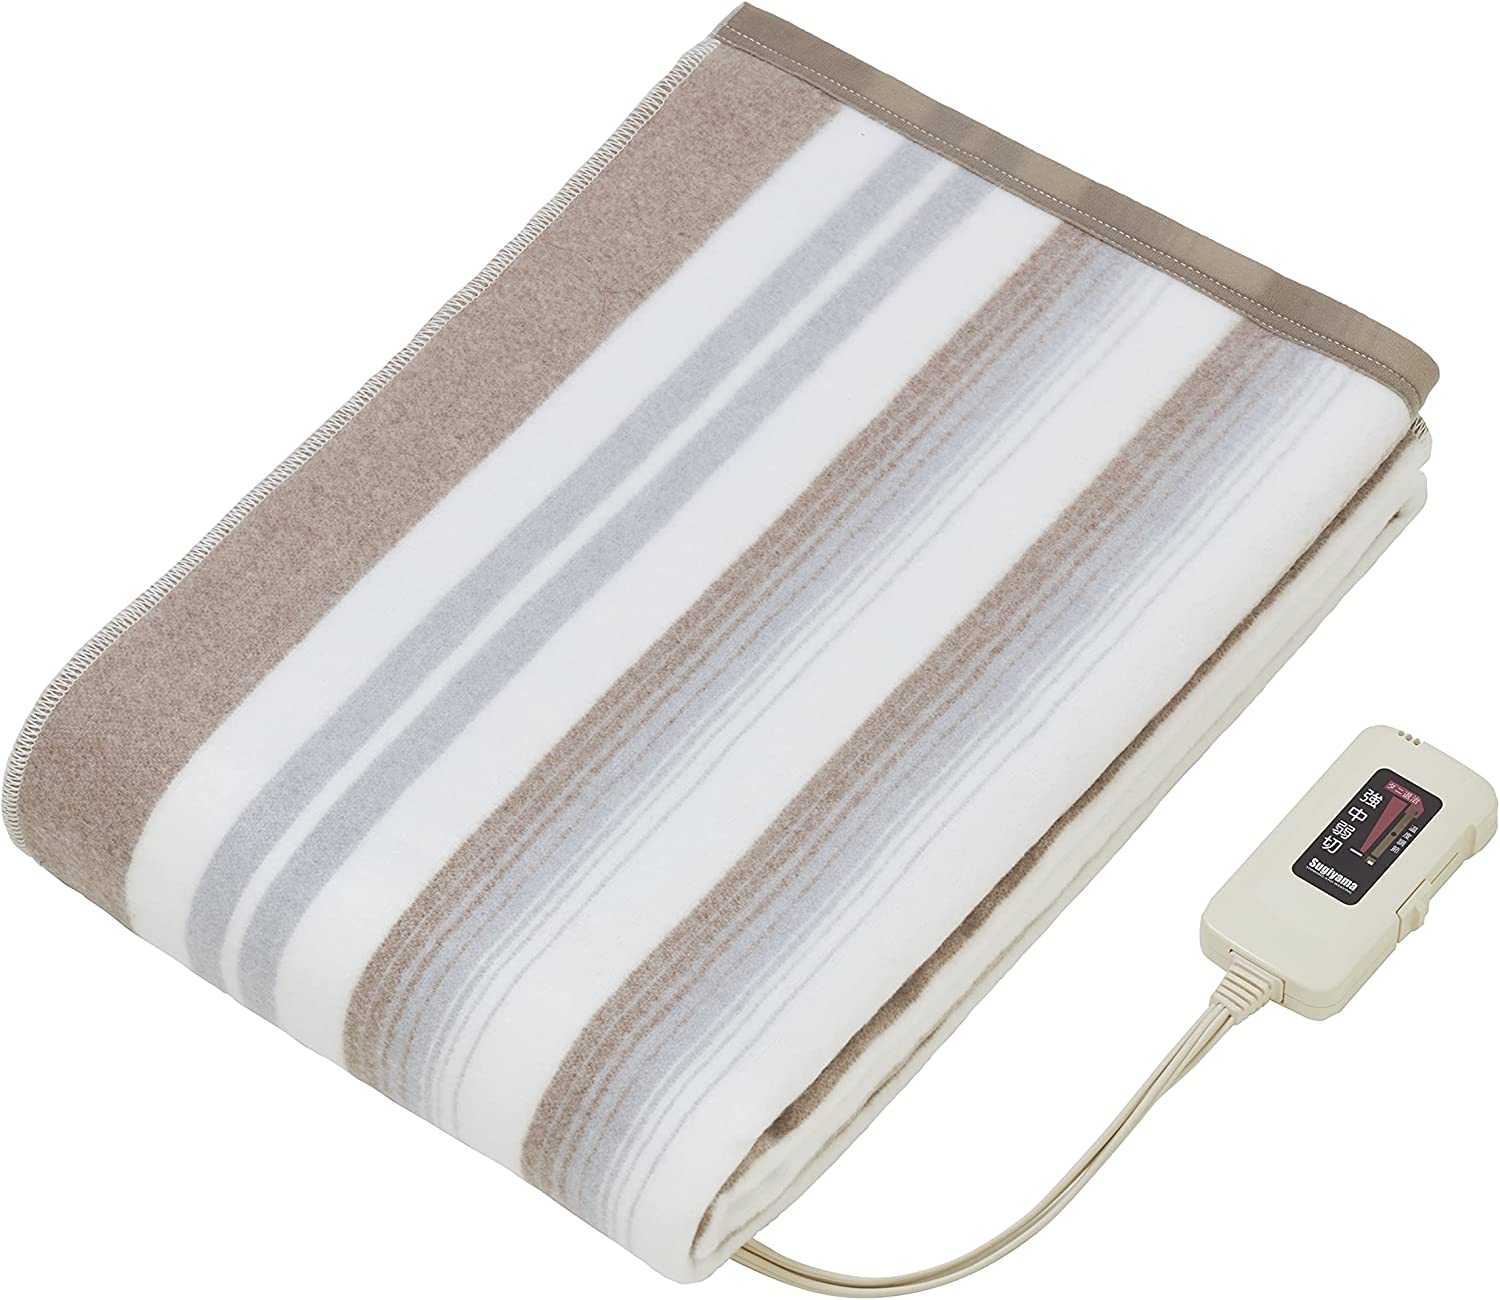 椙山紡織株式會社 椙山紡織 Sugiyama可水洗電熱毯 NA-013K 100V 日本製